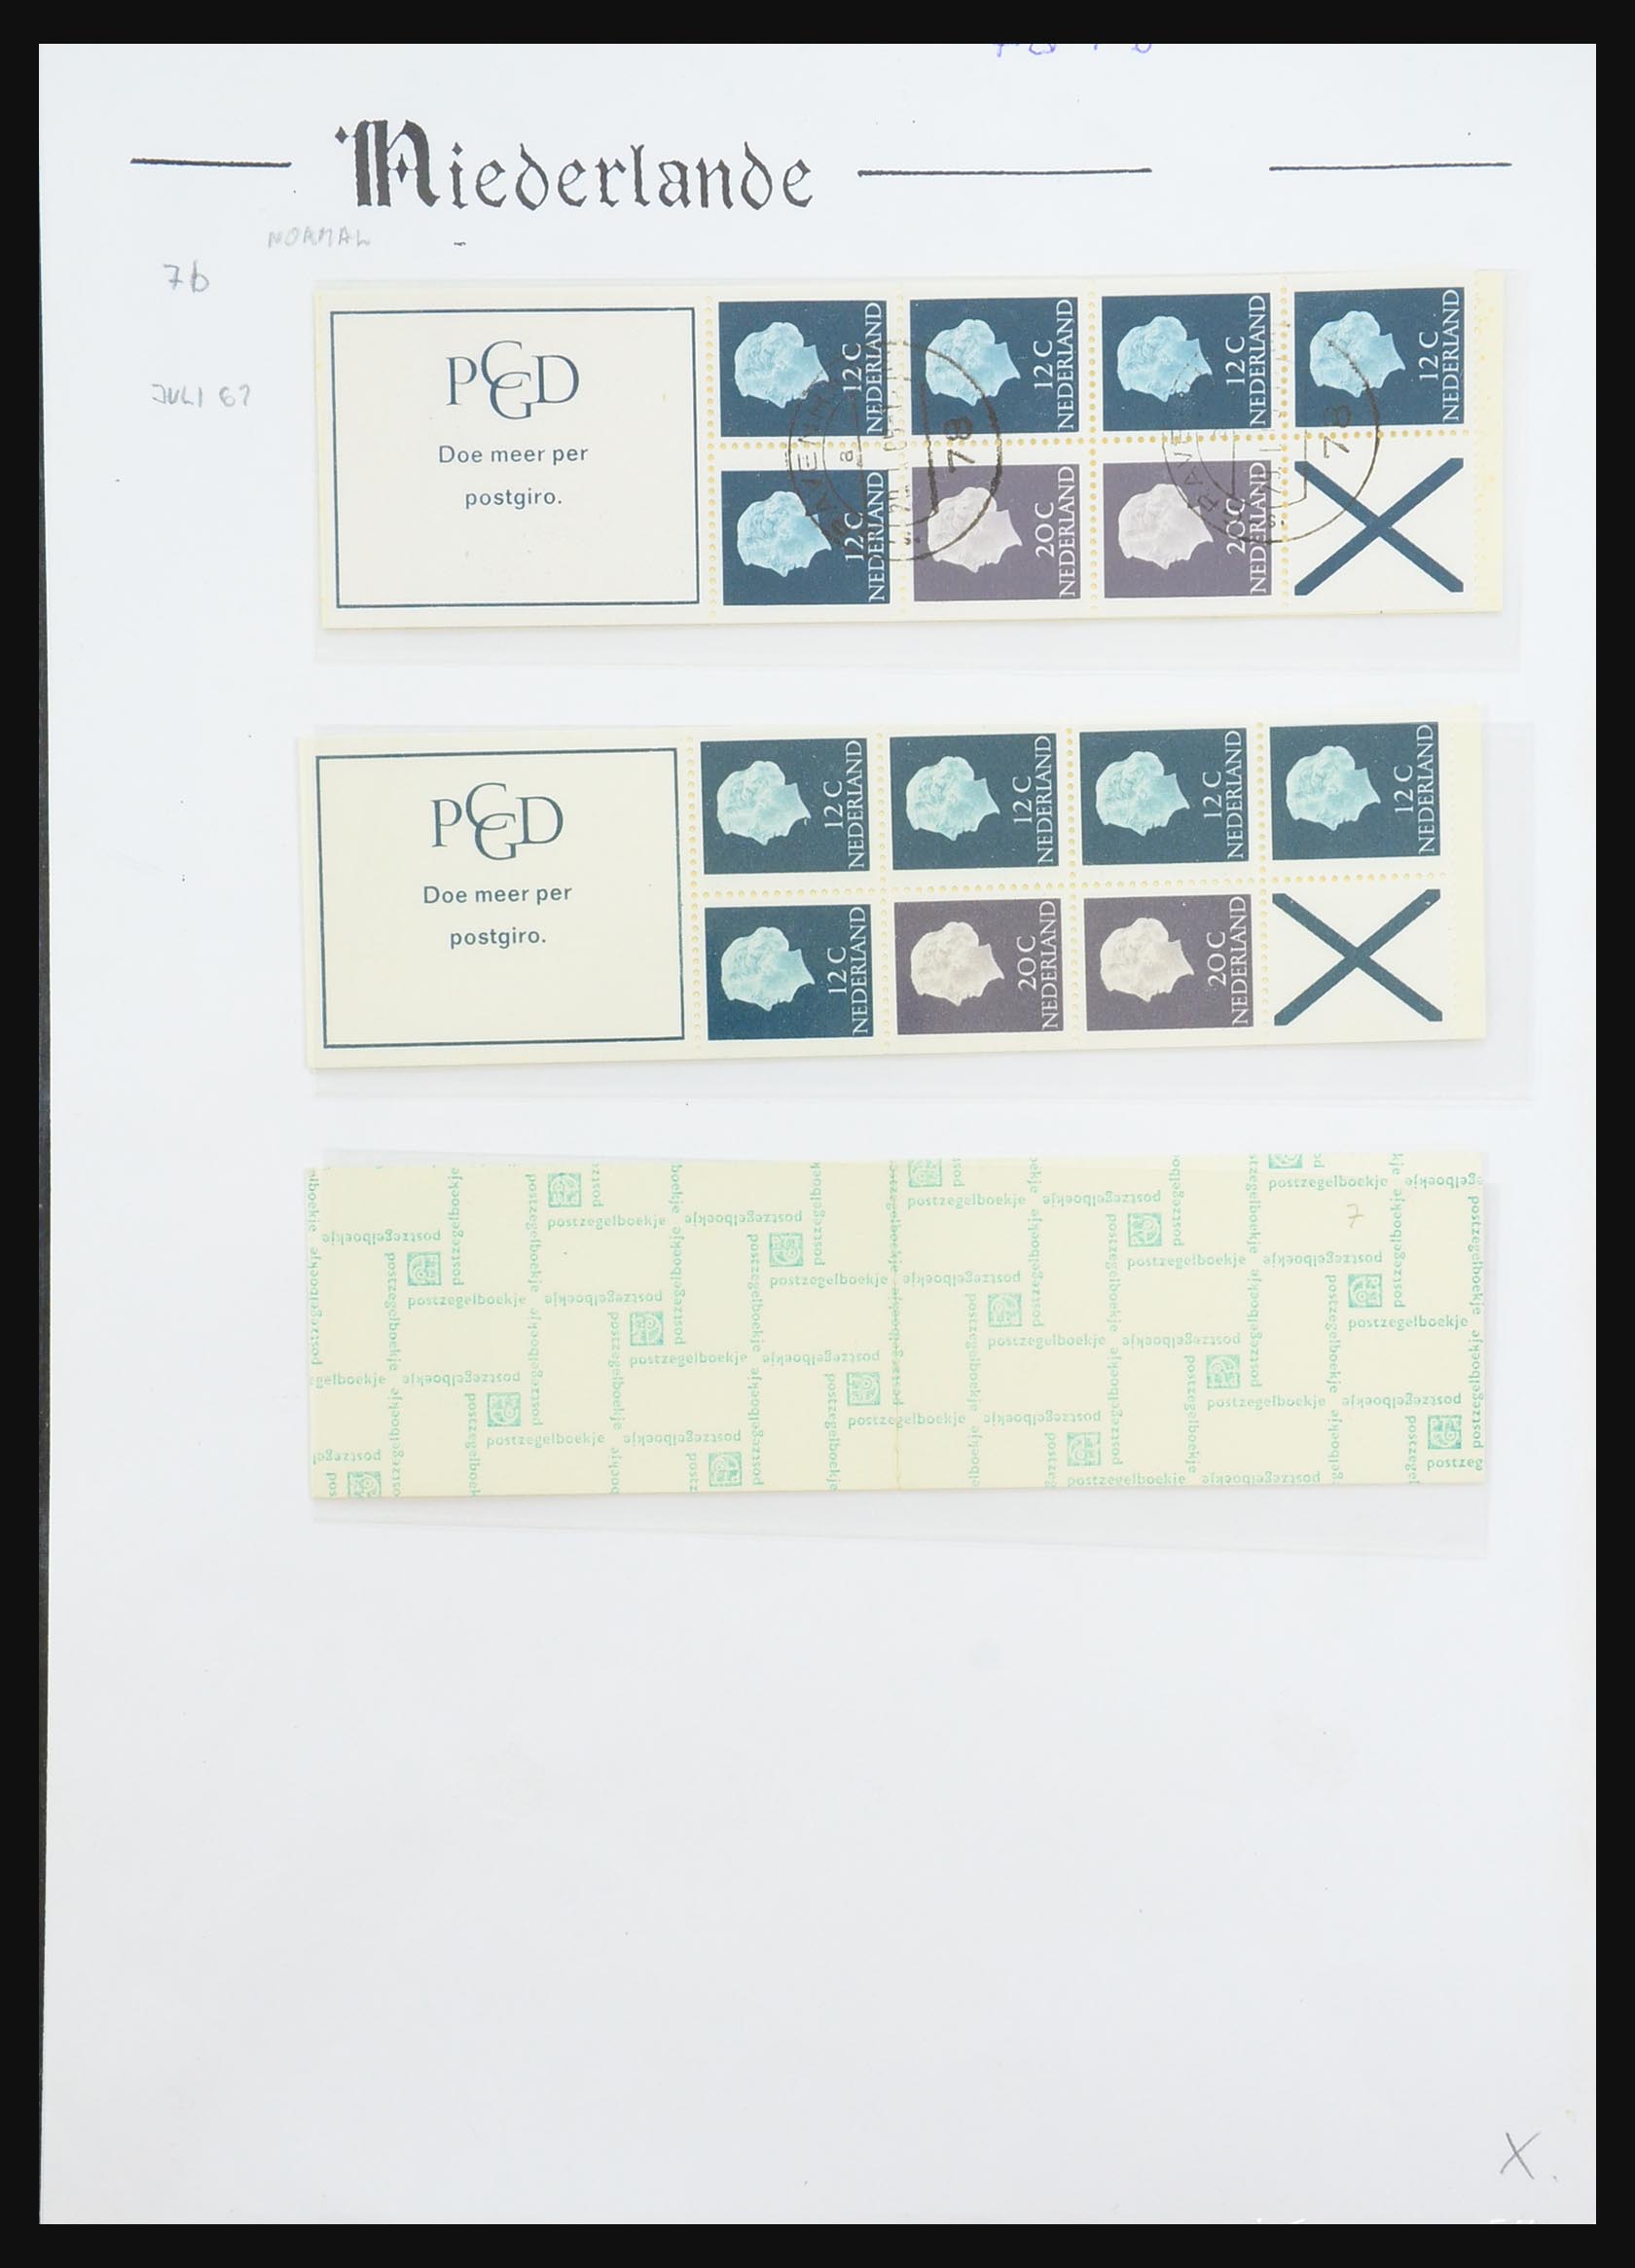 31311 023 - 31311 Netherlands stamp booklets 1964-1994.